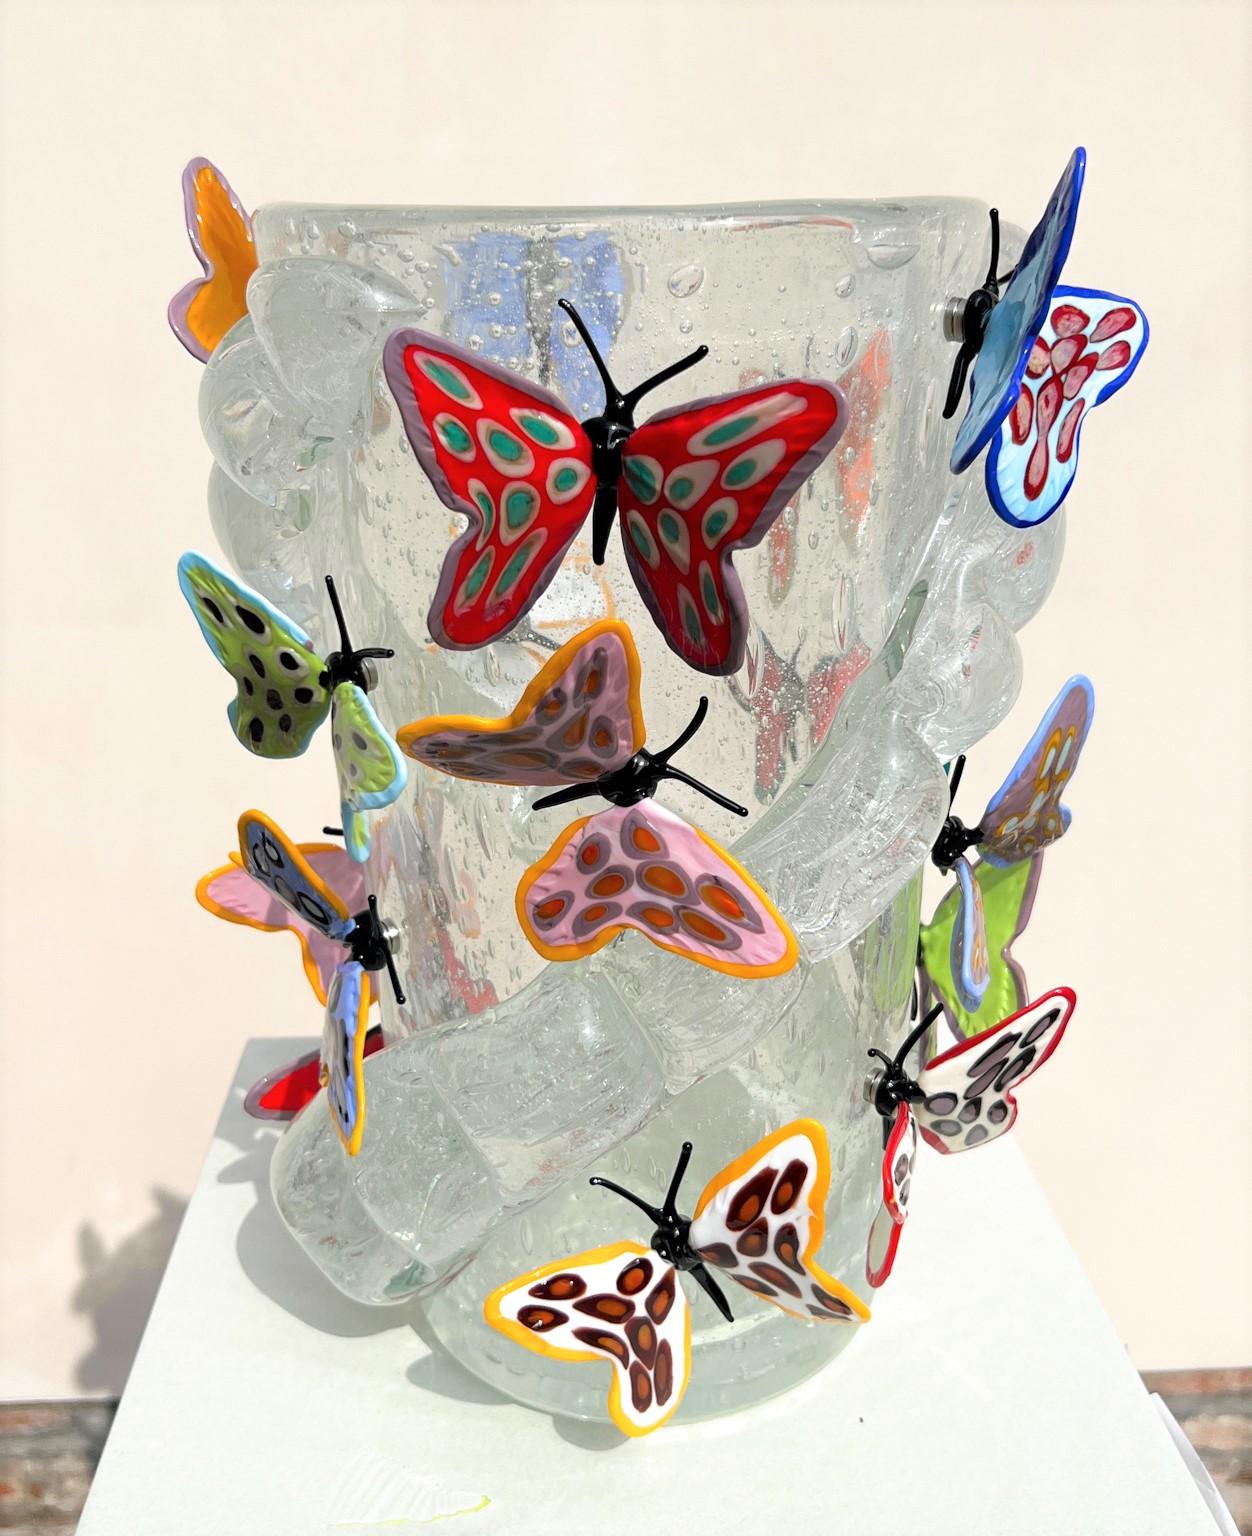 Handgefertigte Kristall Pulegoso Murano Glas geblasen Vase mit 16 bunten Schmetterlingen mit Magneten befestigt. 
Moderne Vase ideal für eine moderne und rustikale klassische Umgebung, für jedermann. Diese Arbeit wurde in Collaboration zwischen dem